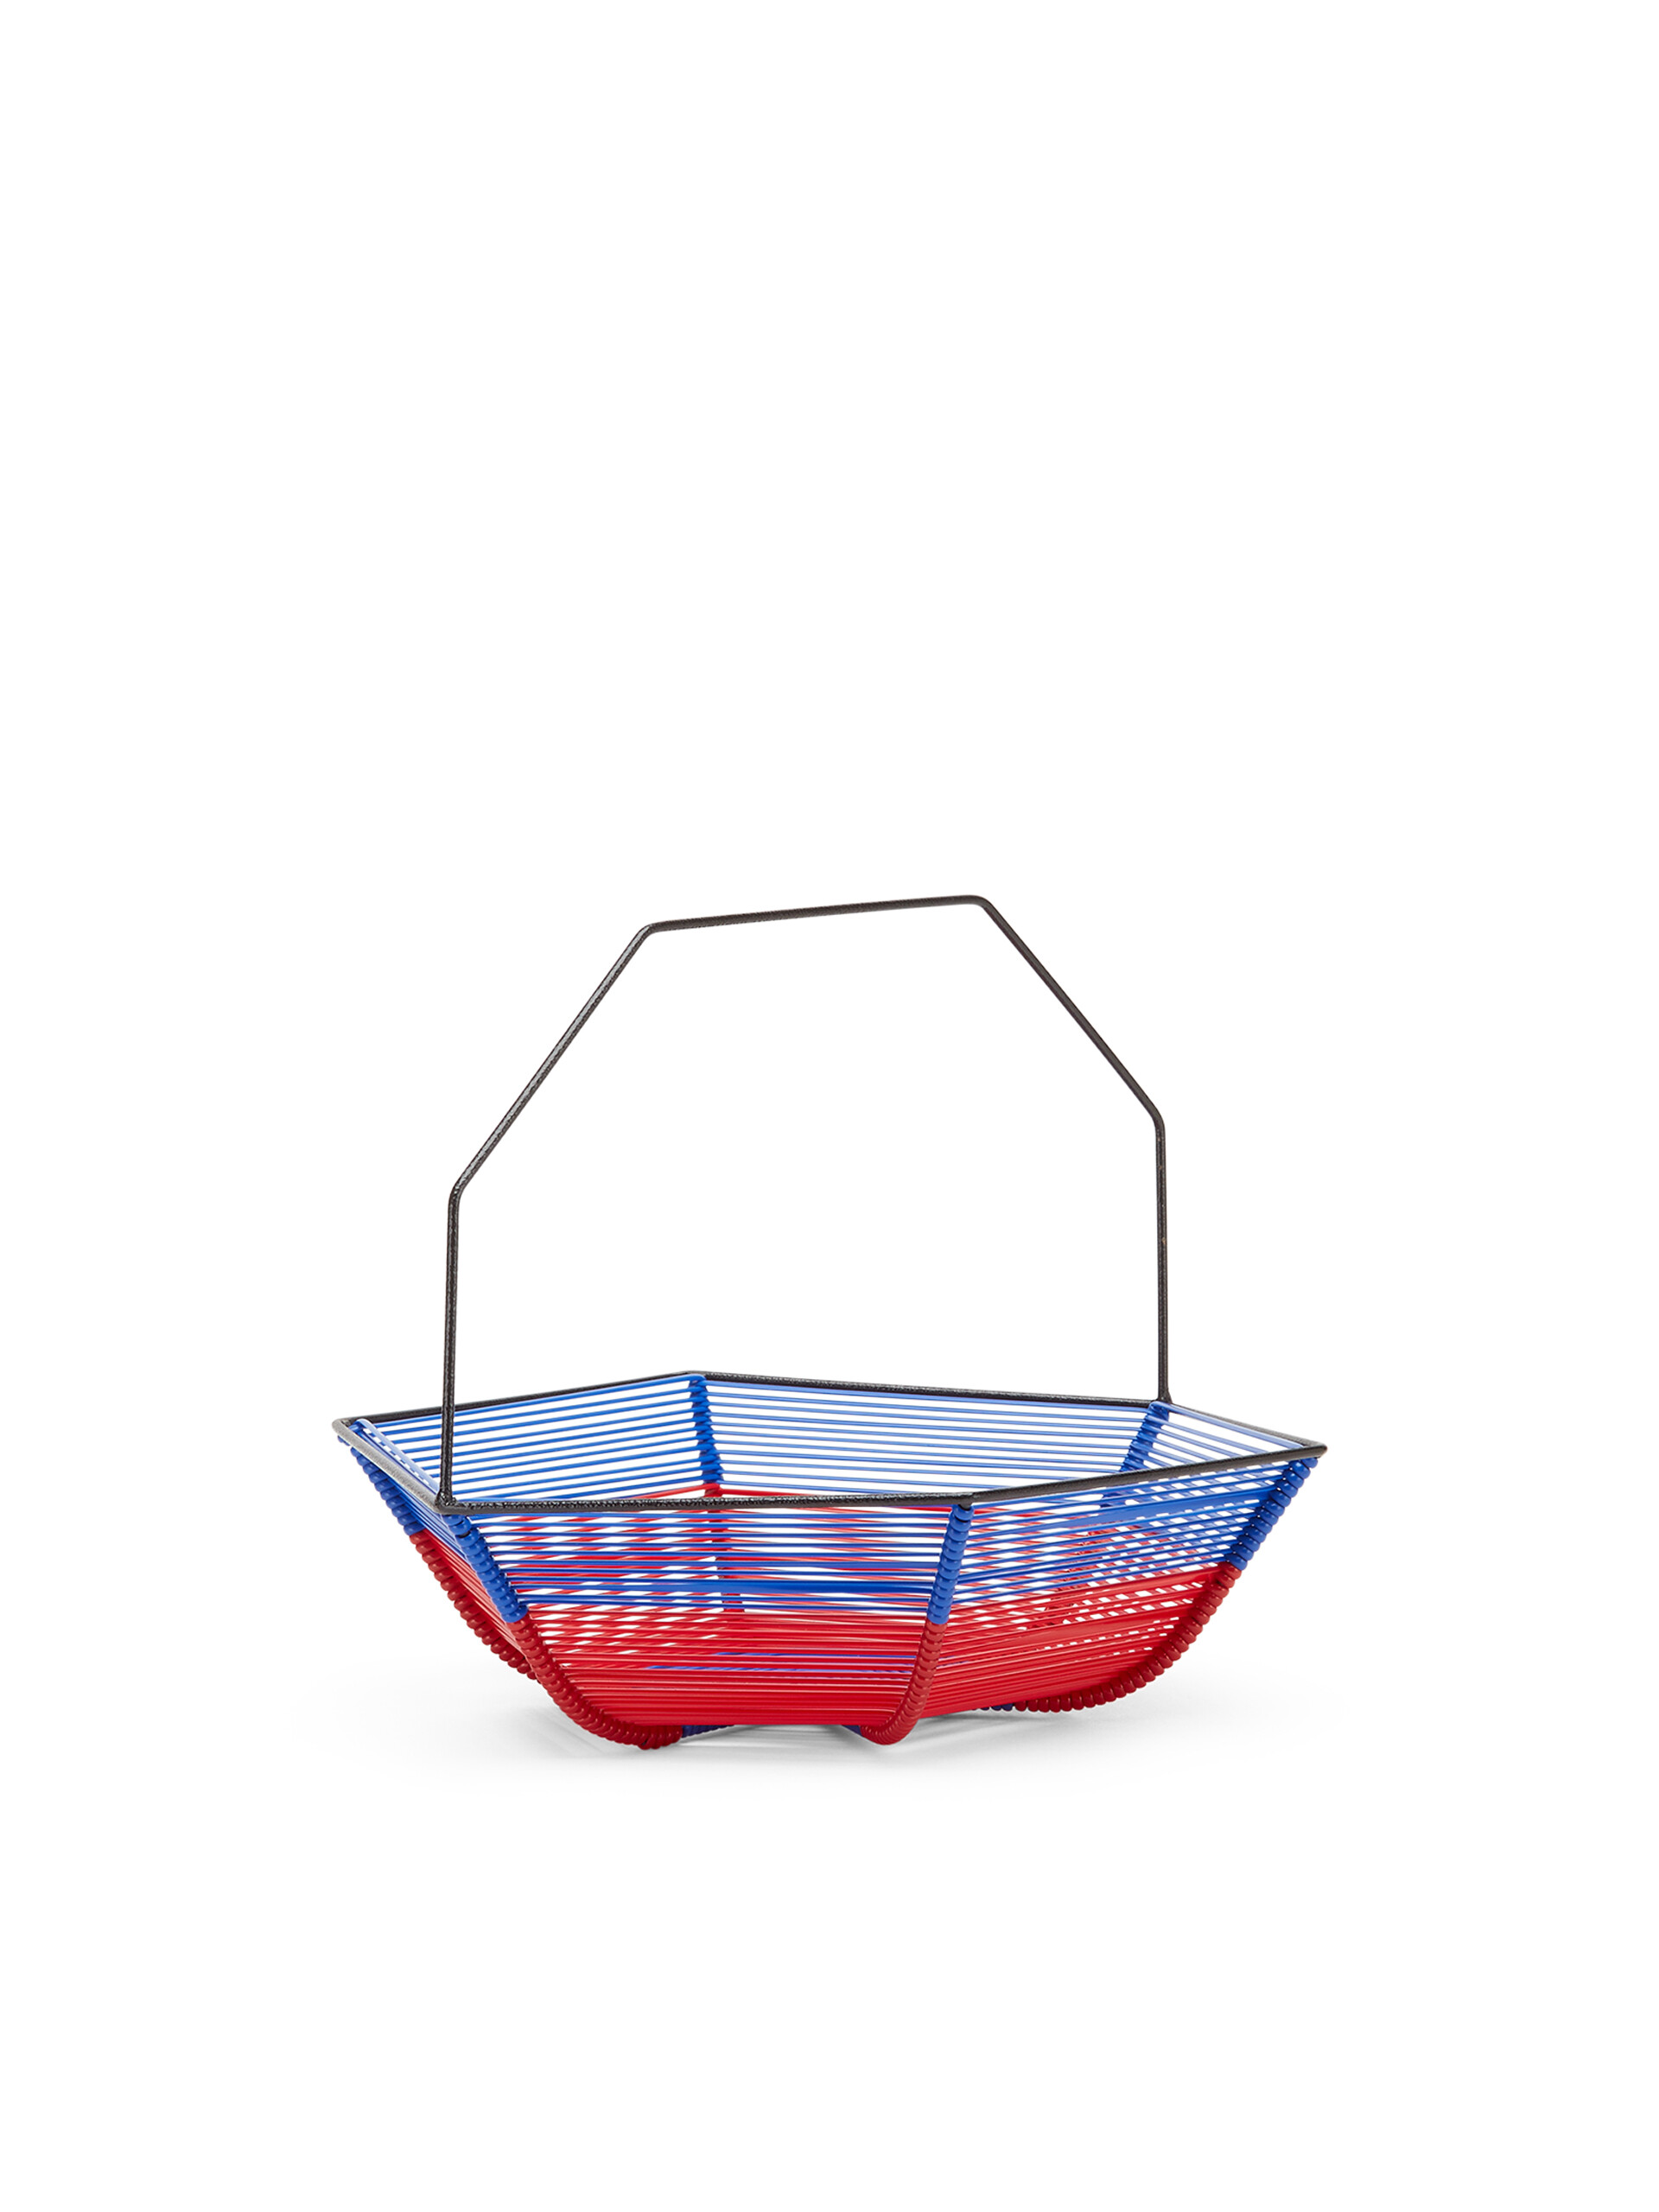 Portafrutta esagonale MARNI MARKET in ferro e PVC blu e rosso - Home Accessories - Image 2